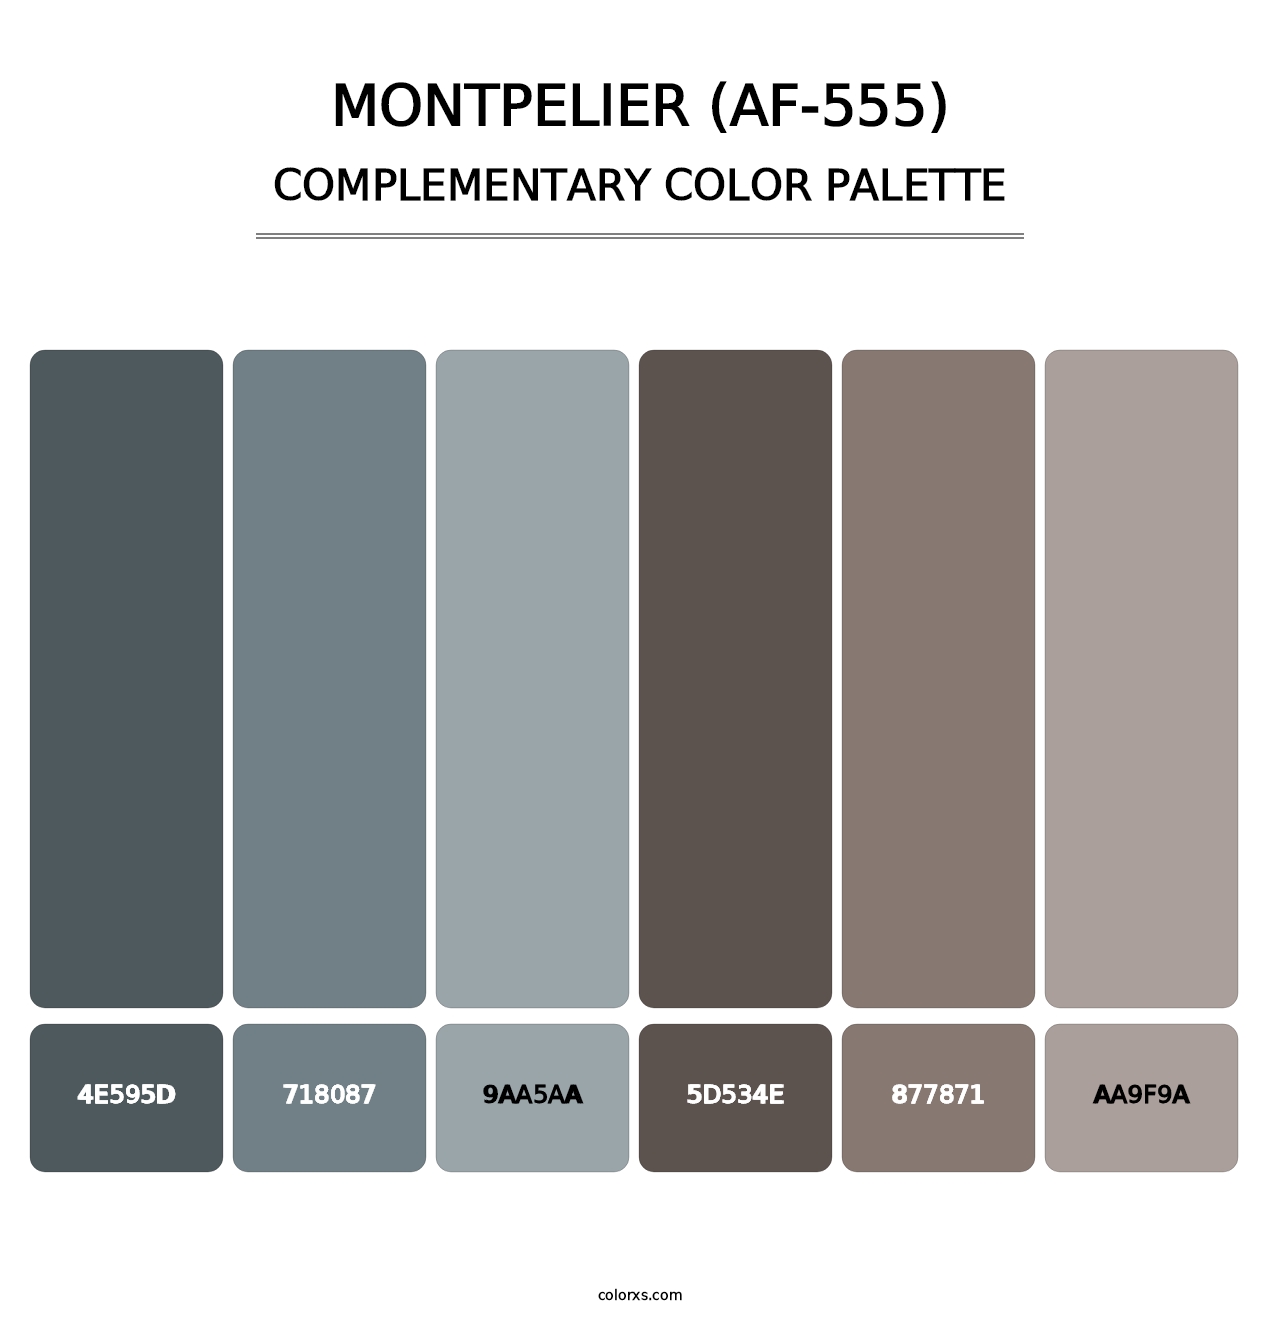 Montpelier (AF-555) - Complementary Color Palette